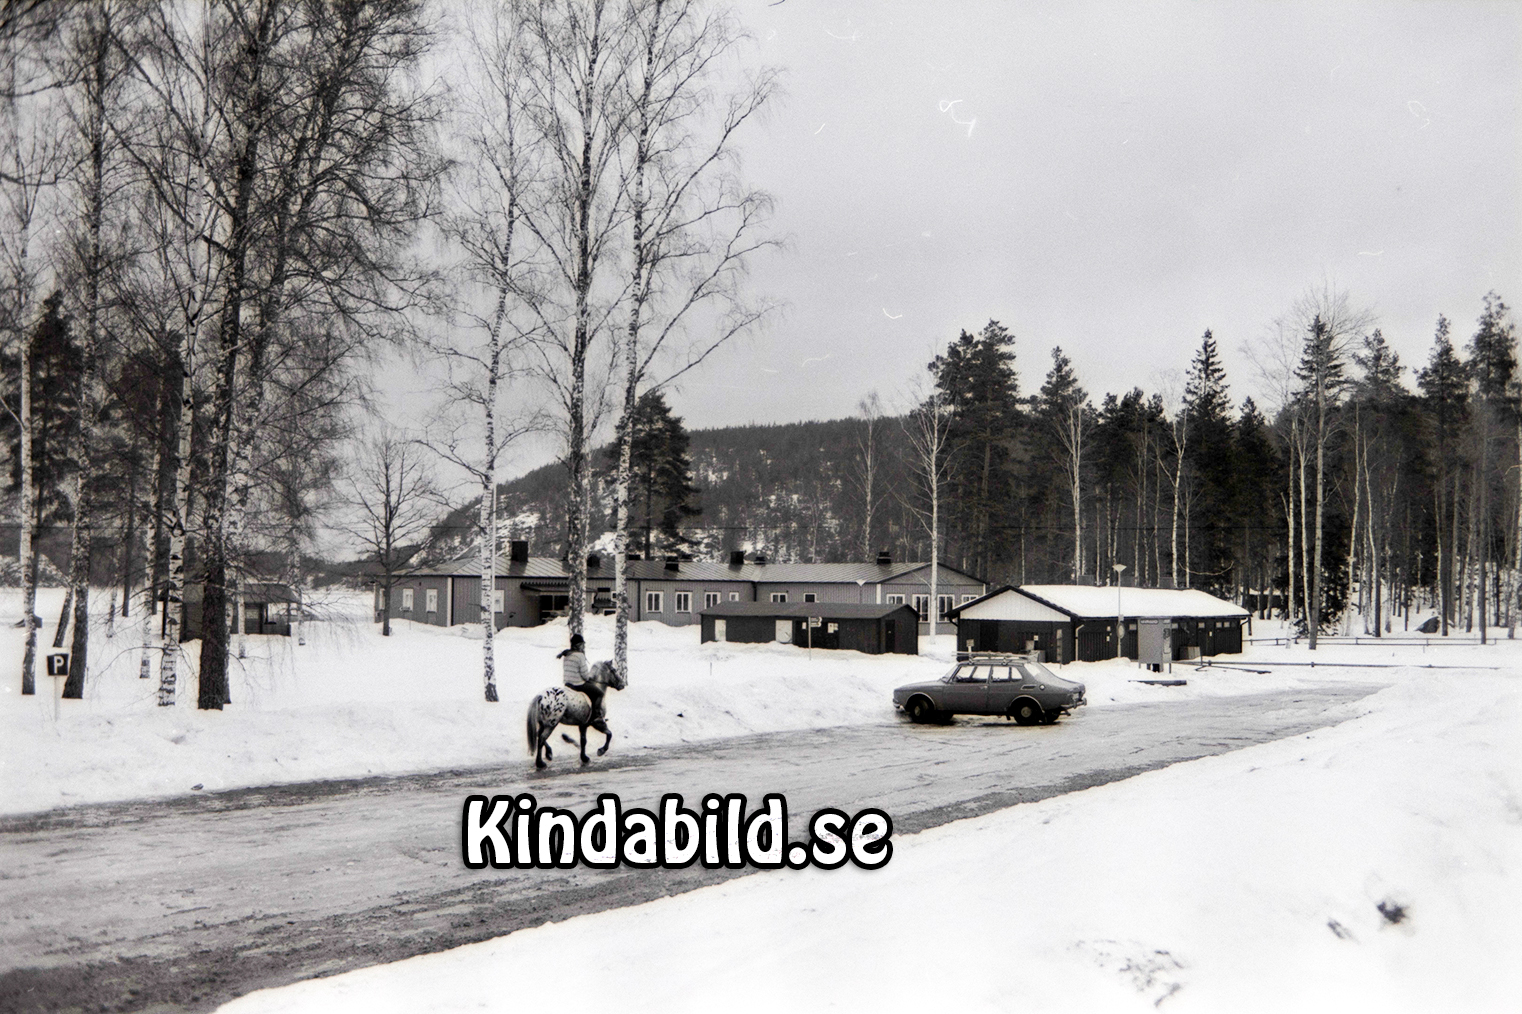 Stiftelsen Fritid Kisa
raja
Vinterbilder från Pinnarp Kisa  

